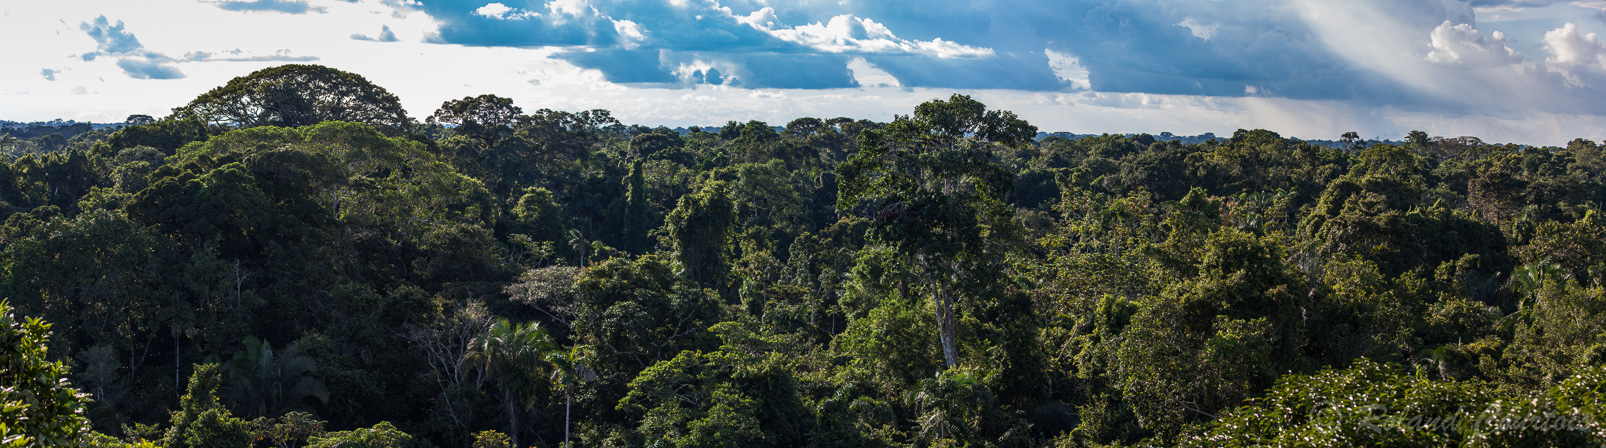 Vue panoramique depuis une tour d'observation de 36 m de hauteur installée par les indiens de la réserve Yasuni.